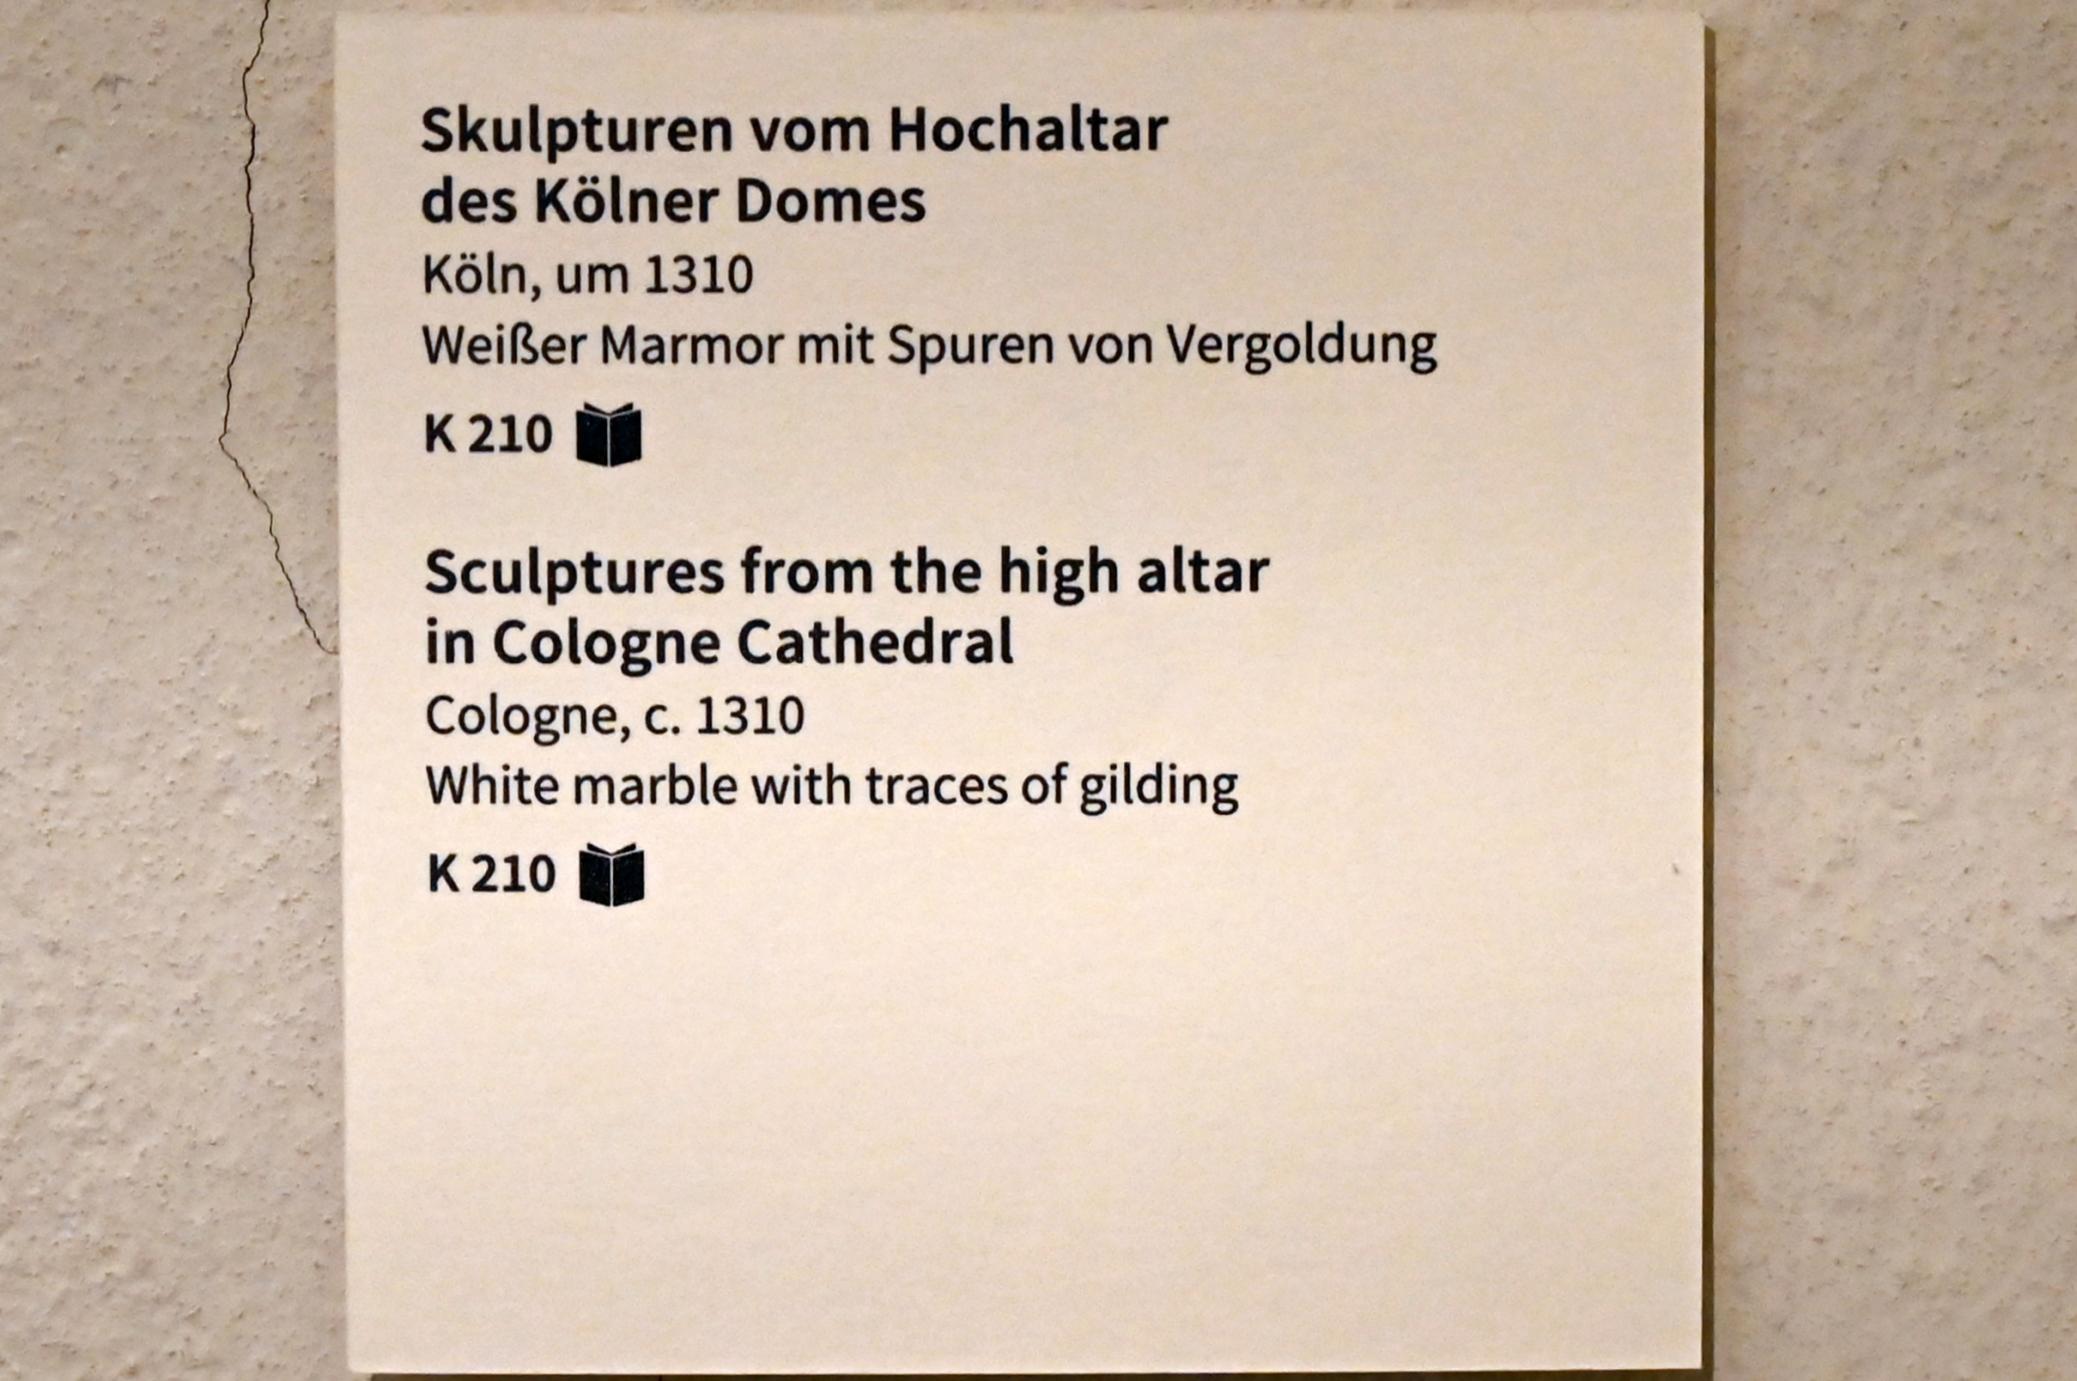 Skulpturen vom Hochaltar des Kölner Domes, Köln, Hohe Domkirche Sankt Petrus (Kölner Dom), jetzt Köln, Museum Schnütgen, Saal 7, um 1310, Bild 4/4